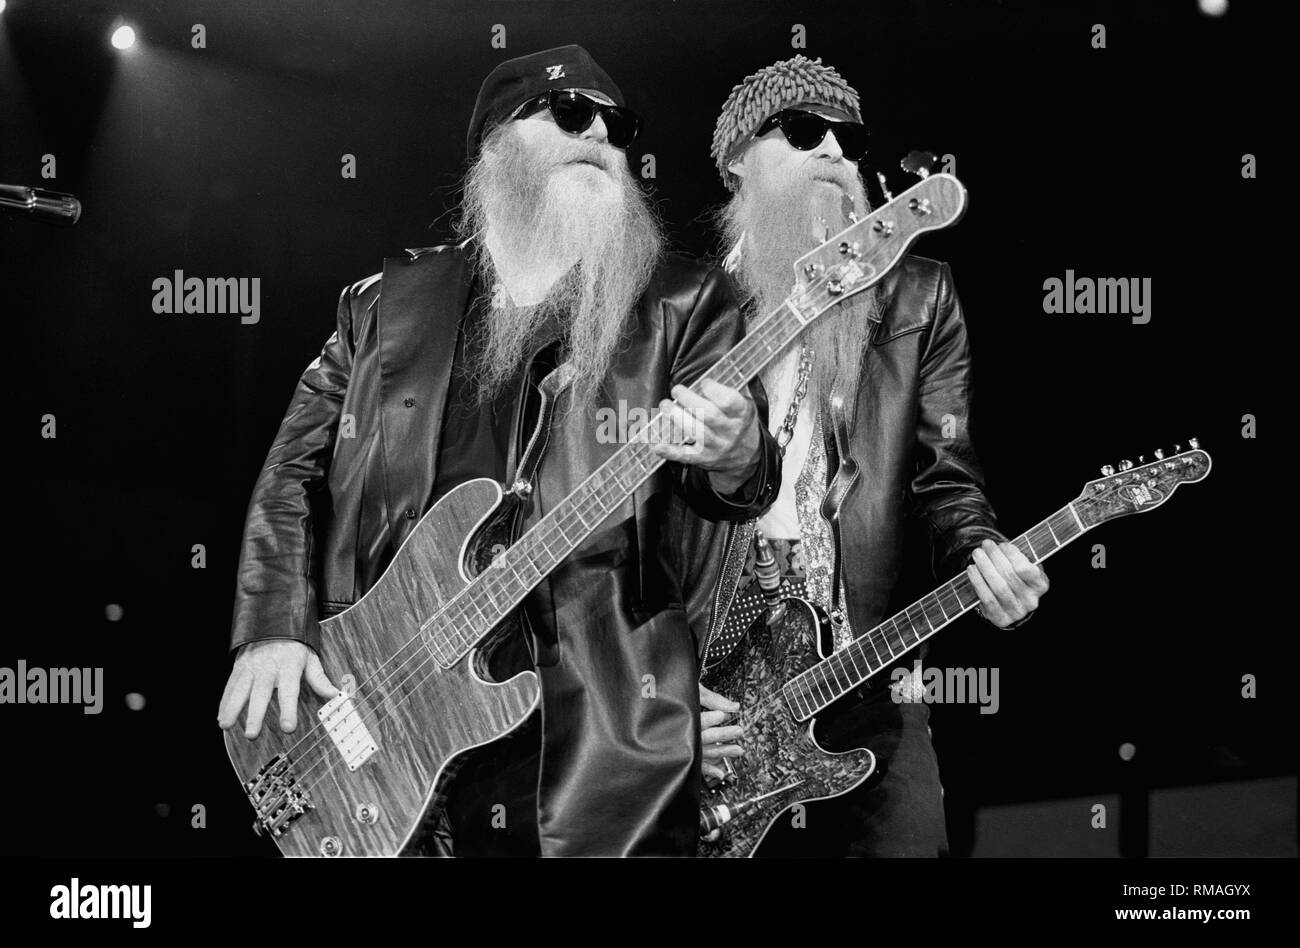 Musicisti polveroso e Hill Billy Gibbons della rock band ZZ Top sono mostrati esibirsi sul palco durante un 'live' aspetto. Foto Stock